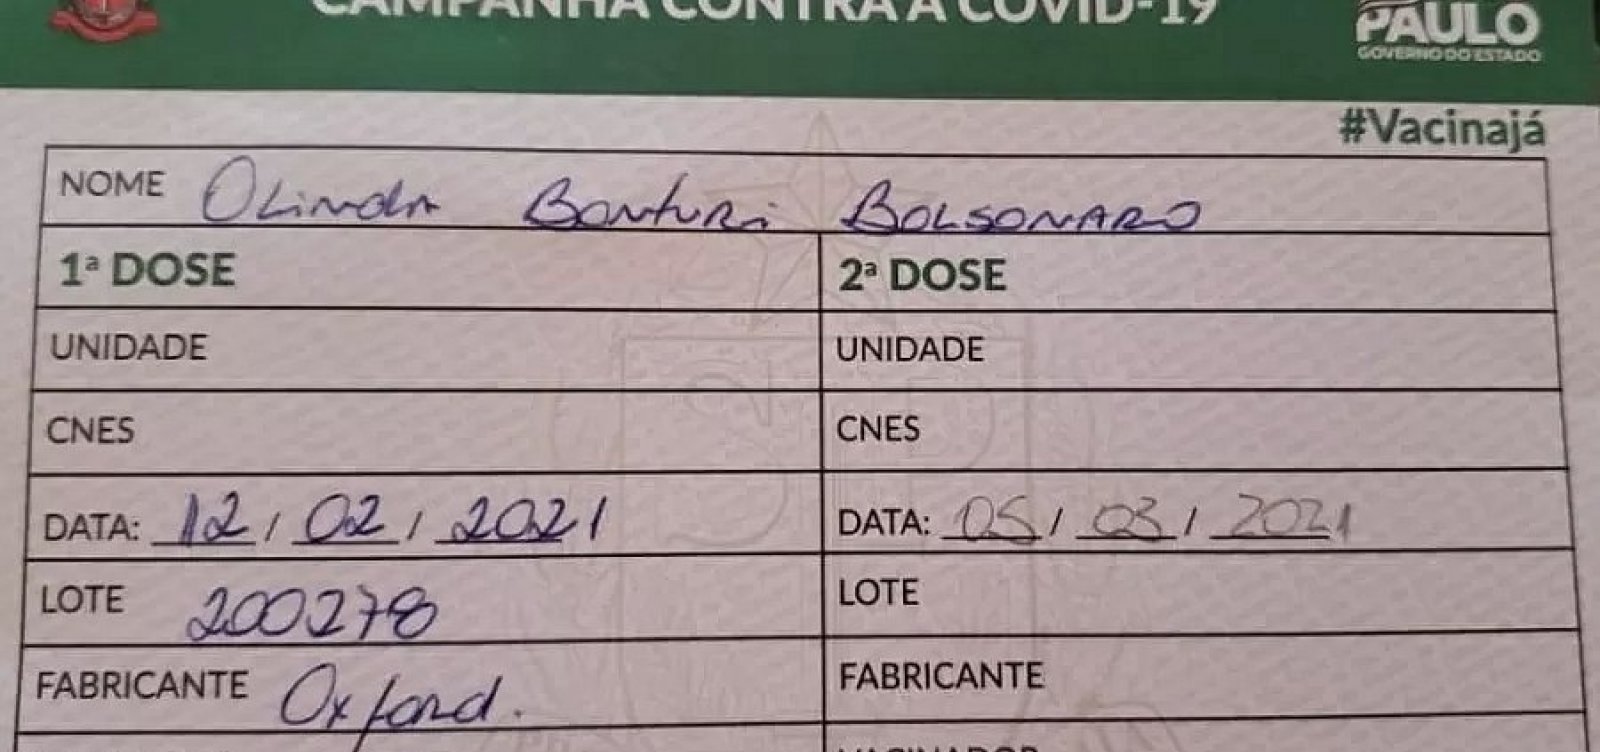 Cartão de vacinação da mãe de Bolsonaro tem nome de Oxford, mas indicações da Coronavac